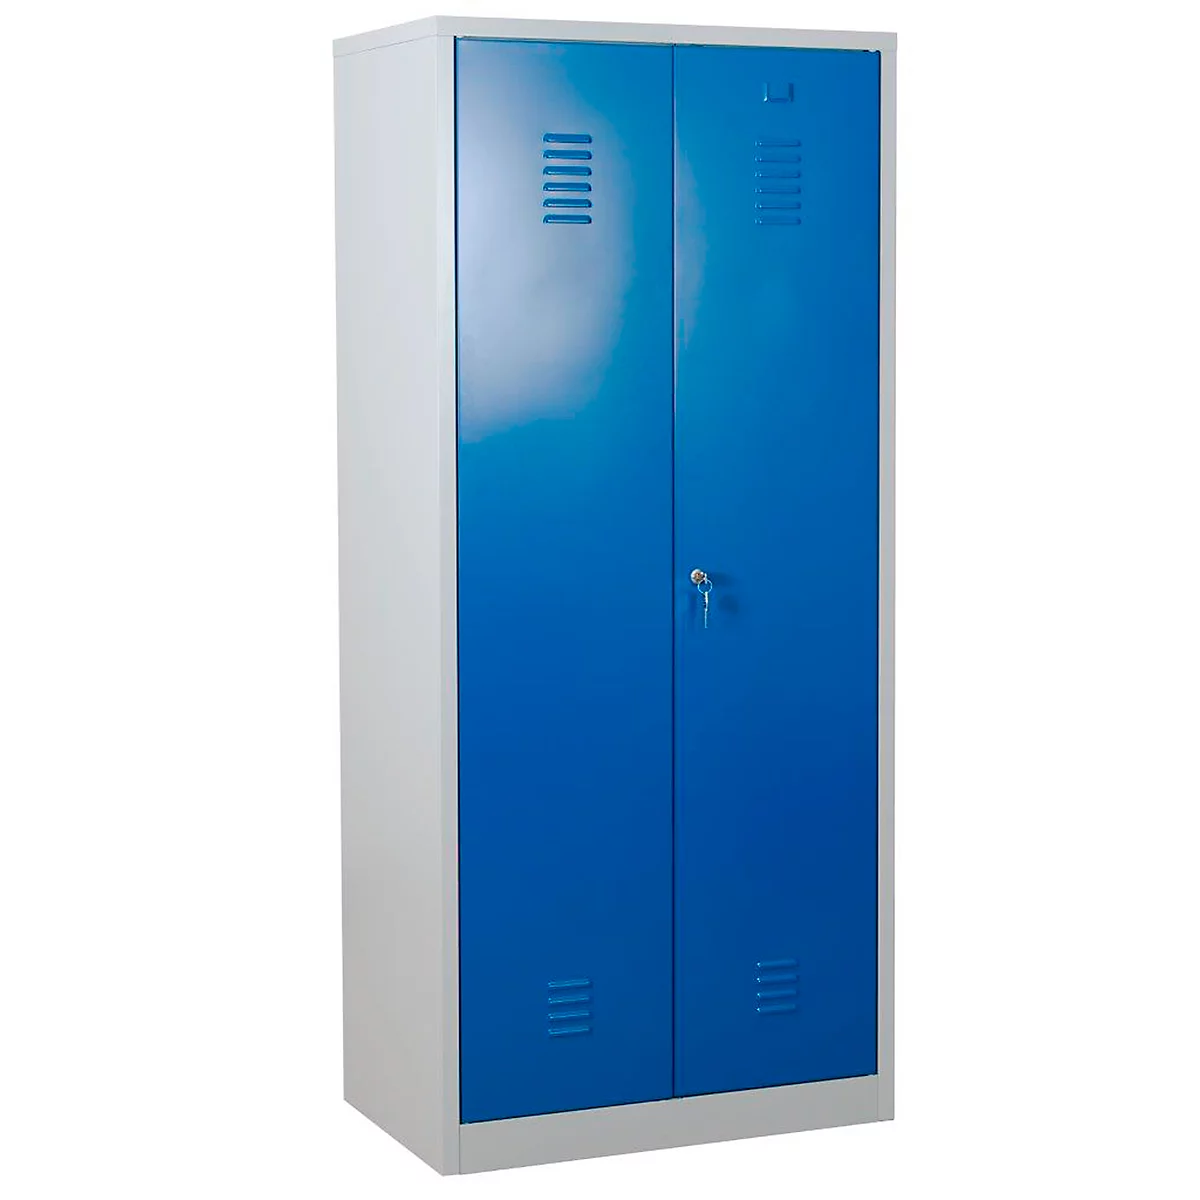 Armario para productos de limpieza, ancho 800 mm, 4 estantes, pared central completa, con cierre, azul genciana RAL 5010/gris claro RAL 7035